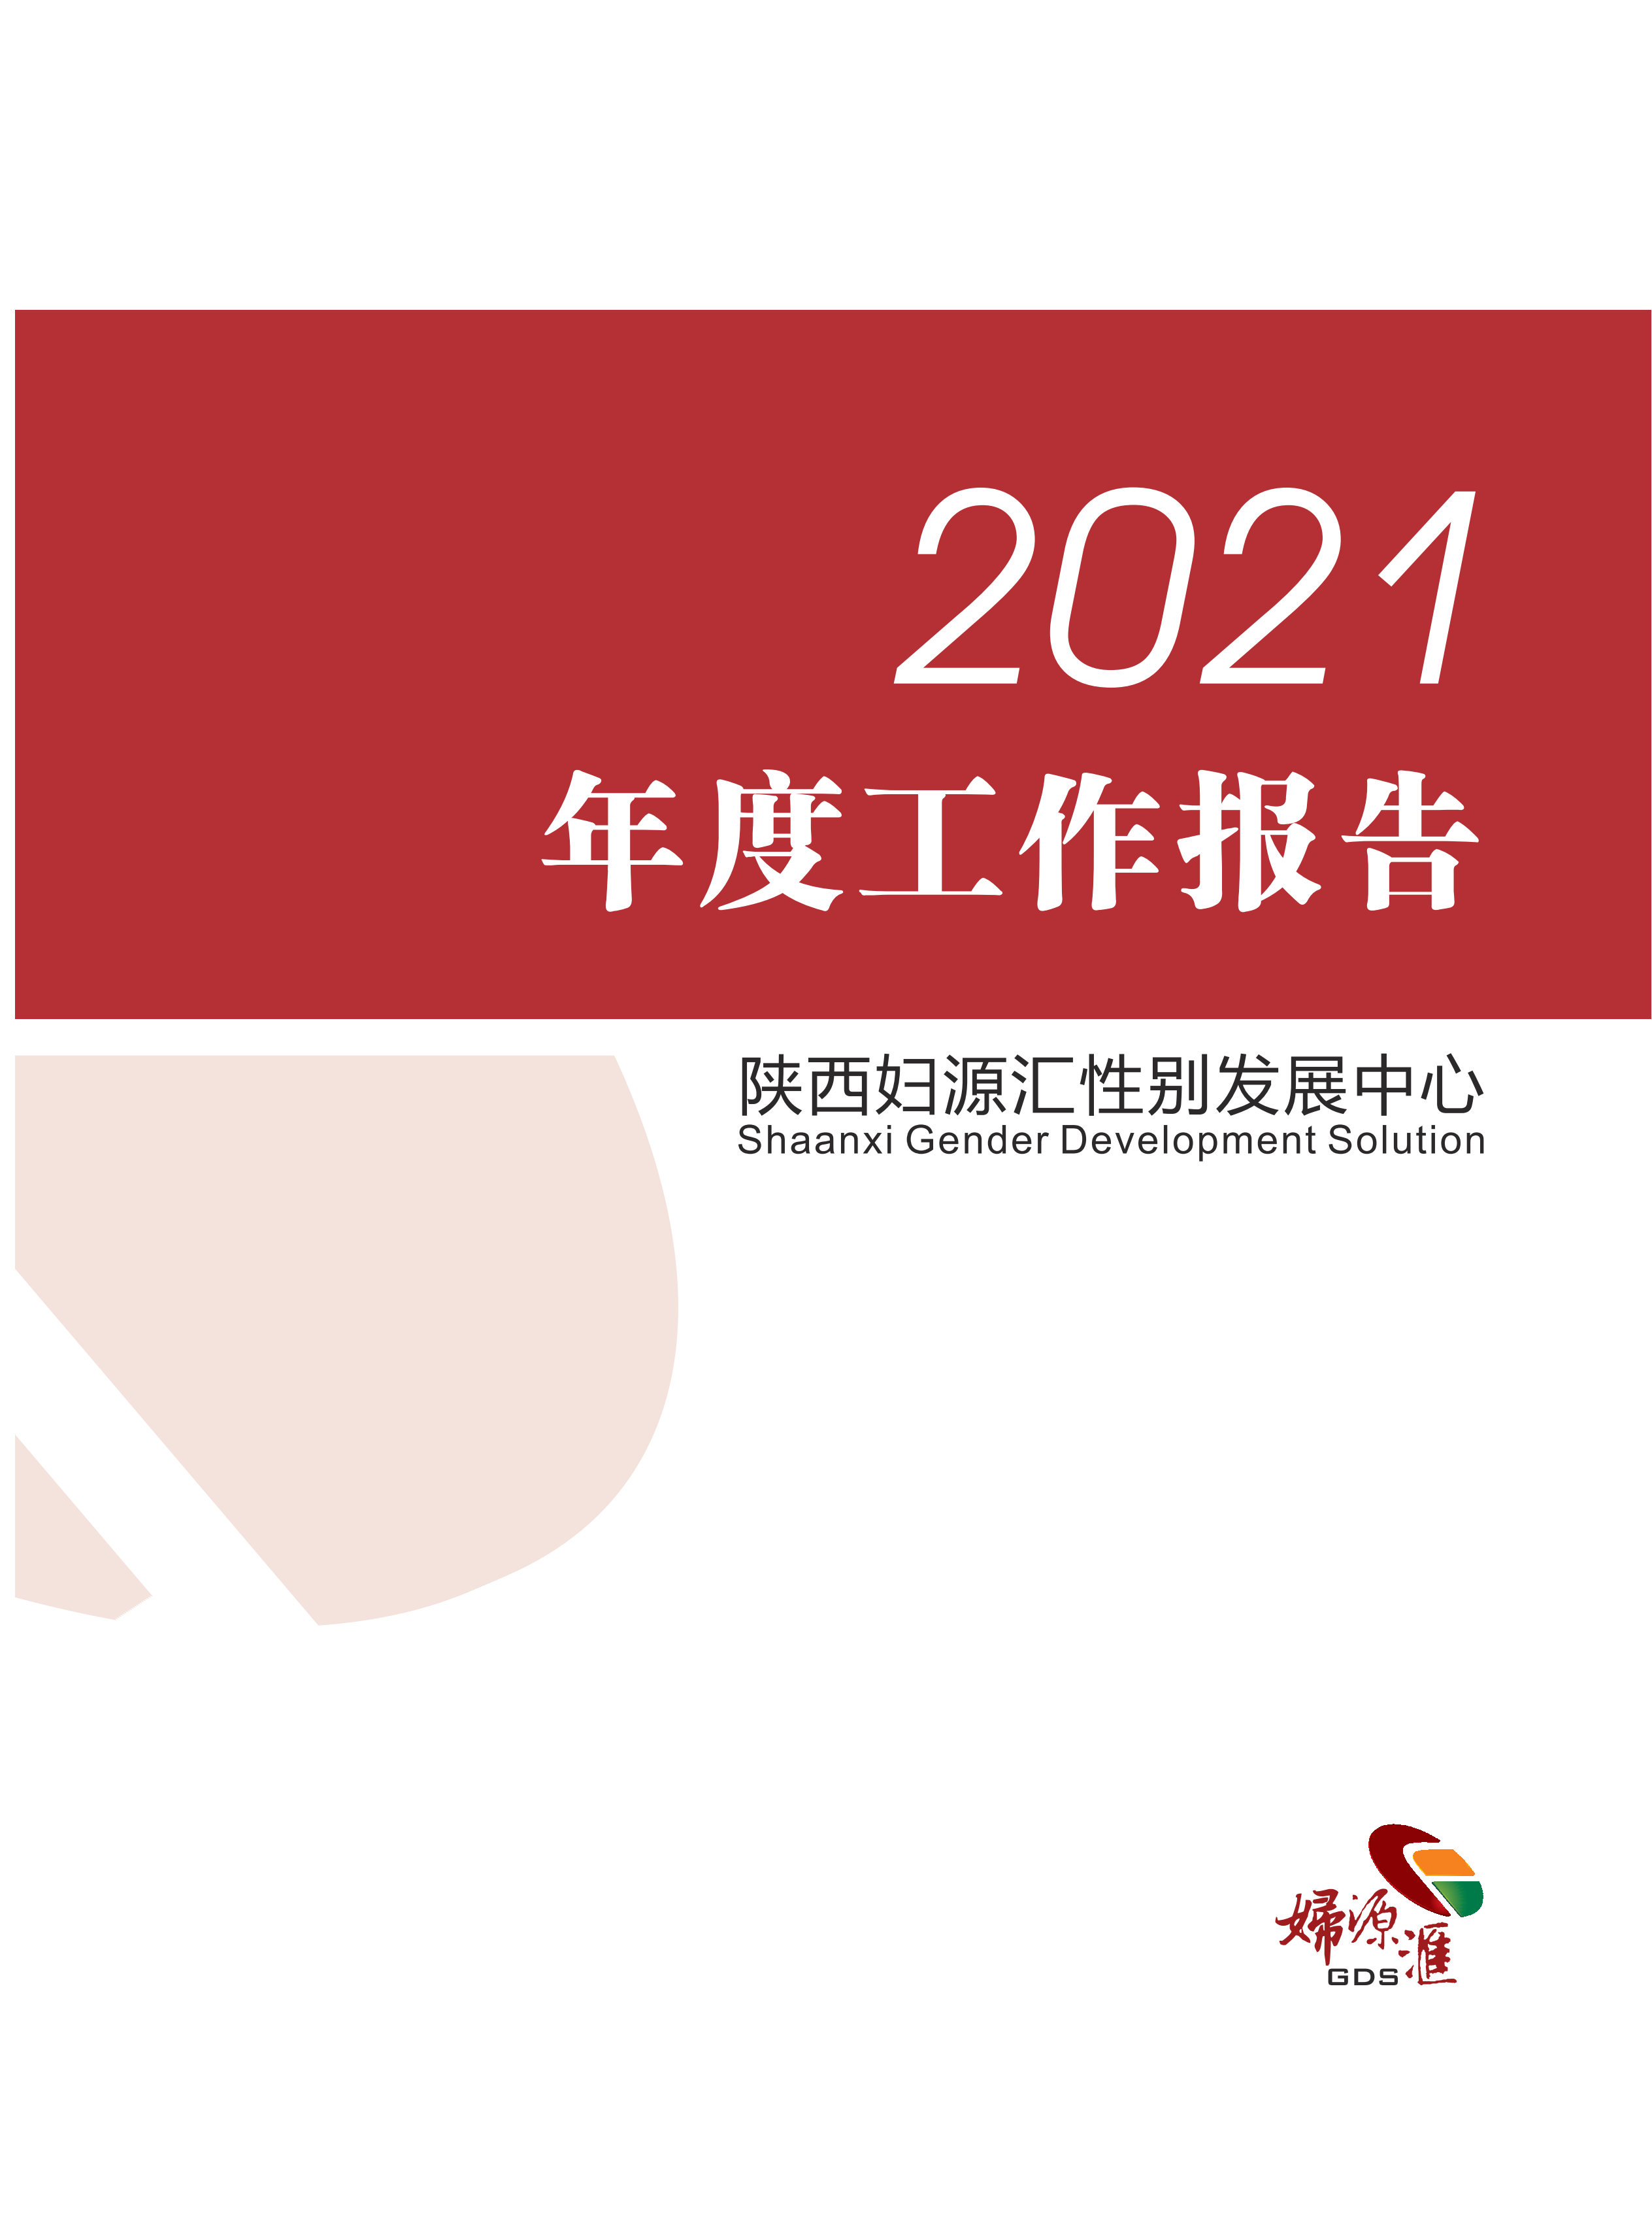 2021年度工作报告